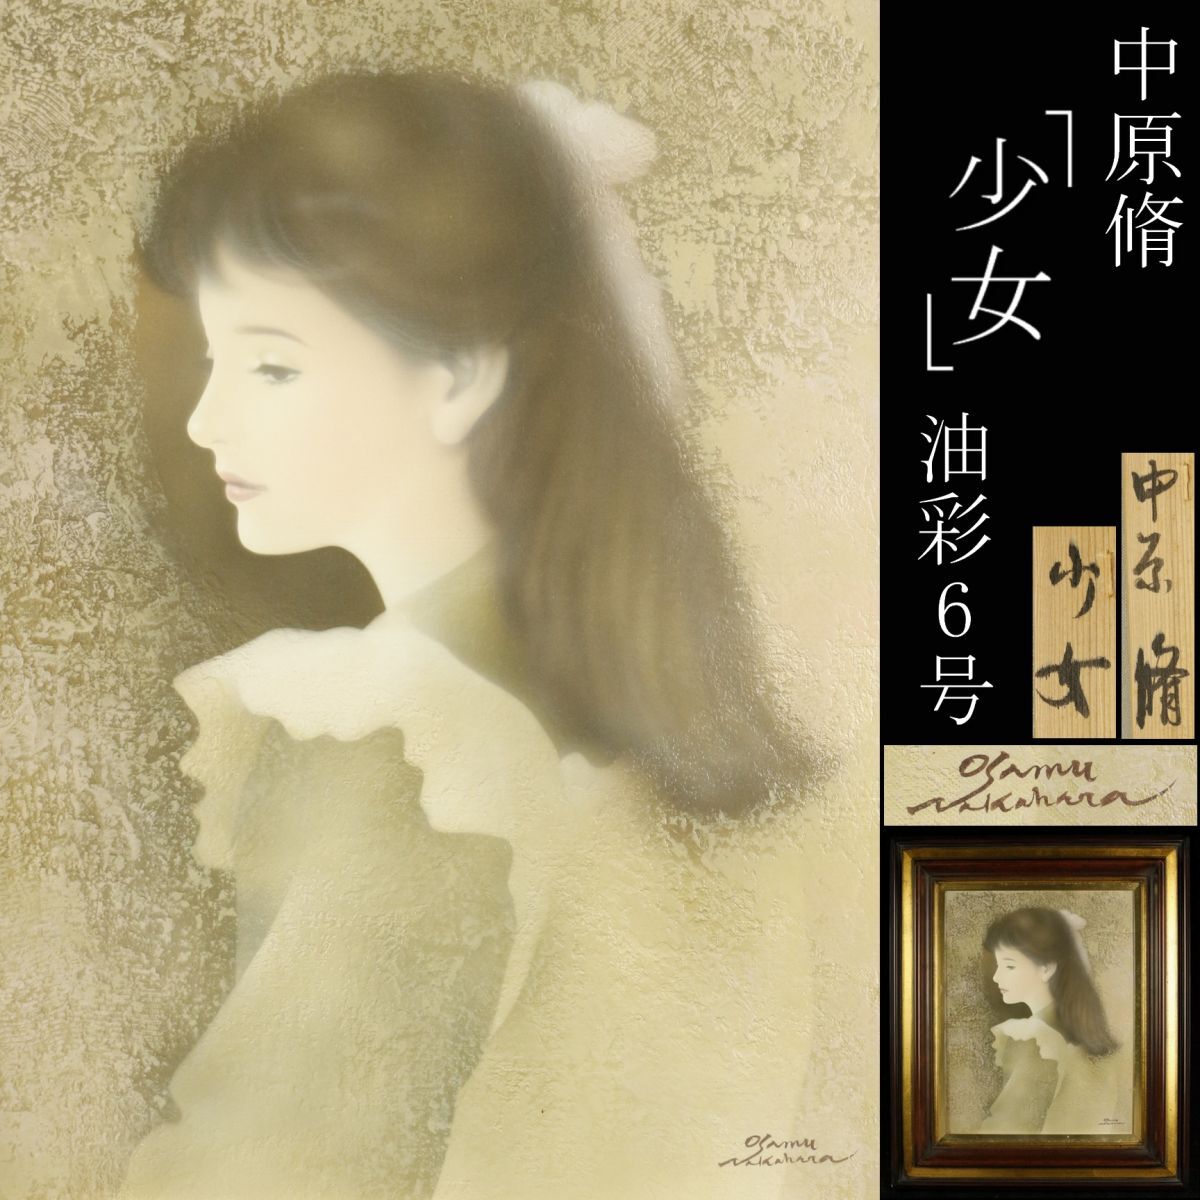 [LIG] Garantierte Echtheit Osamu Nakahara Girl Ölgemälde 6 cm Figurenmalerei Sammlersammlung [.EE]24.3, Malerei, Ölgemälde, Porträt